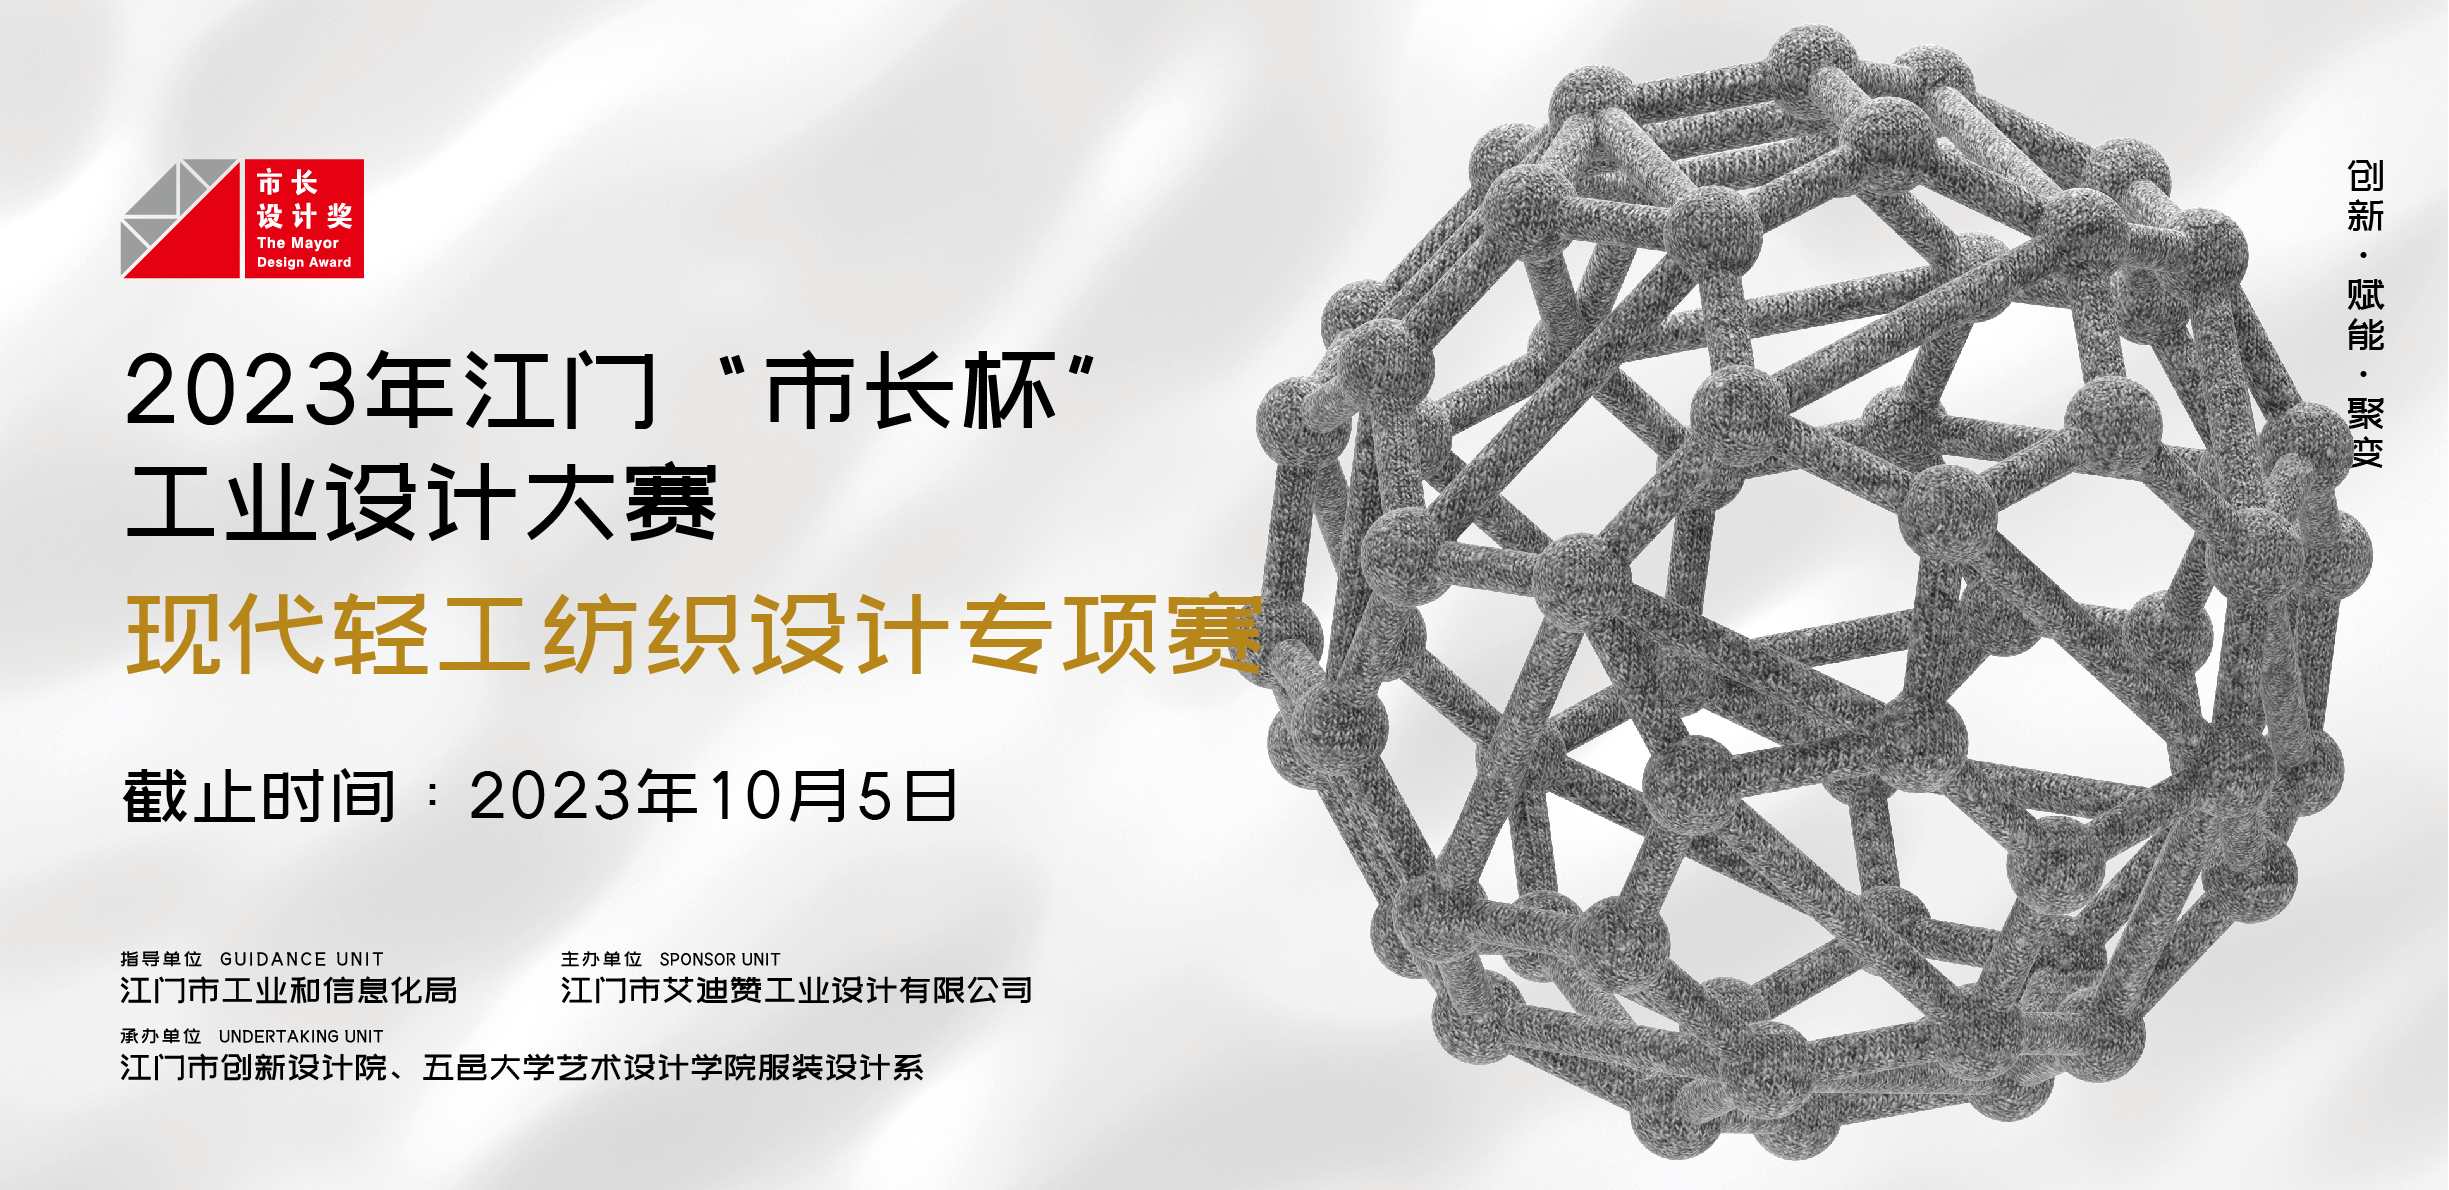 专项赛丨2023年江门“市长杯”工业设计大赛现代轻工纺织设计专项赛正式启动！